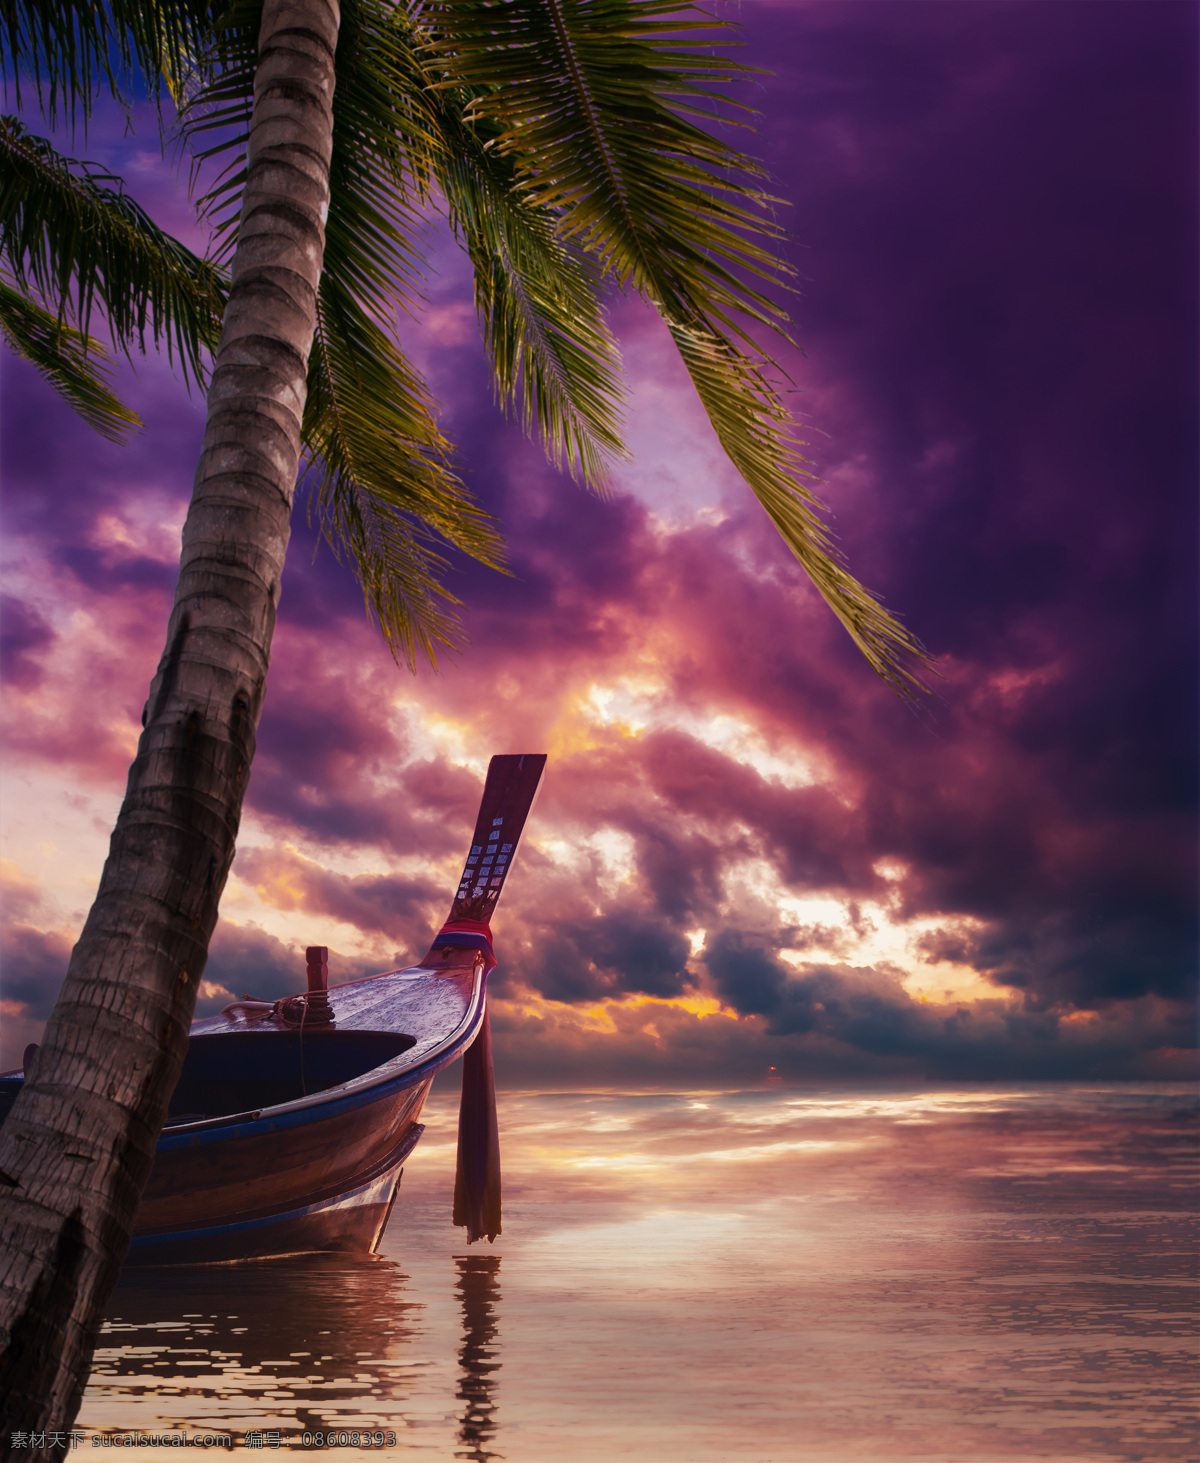 椰树 游船 海岸风景 大海 海洋风景 海平面 美丽风景 风景摄影 美丽风光 自然美景 美丽景色 大海图片 风景图片